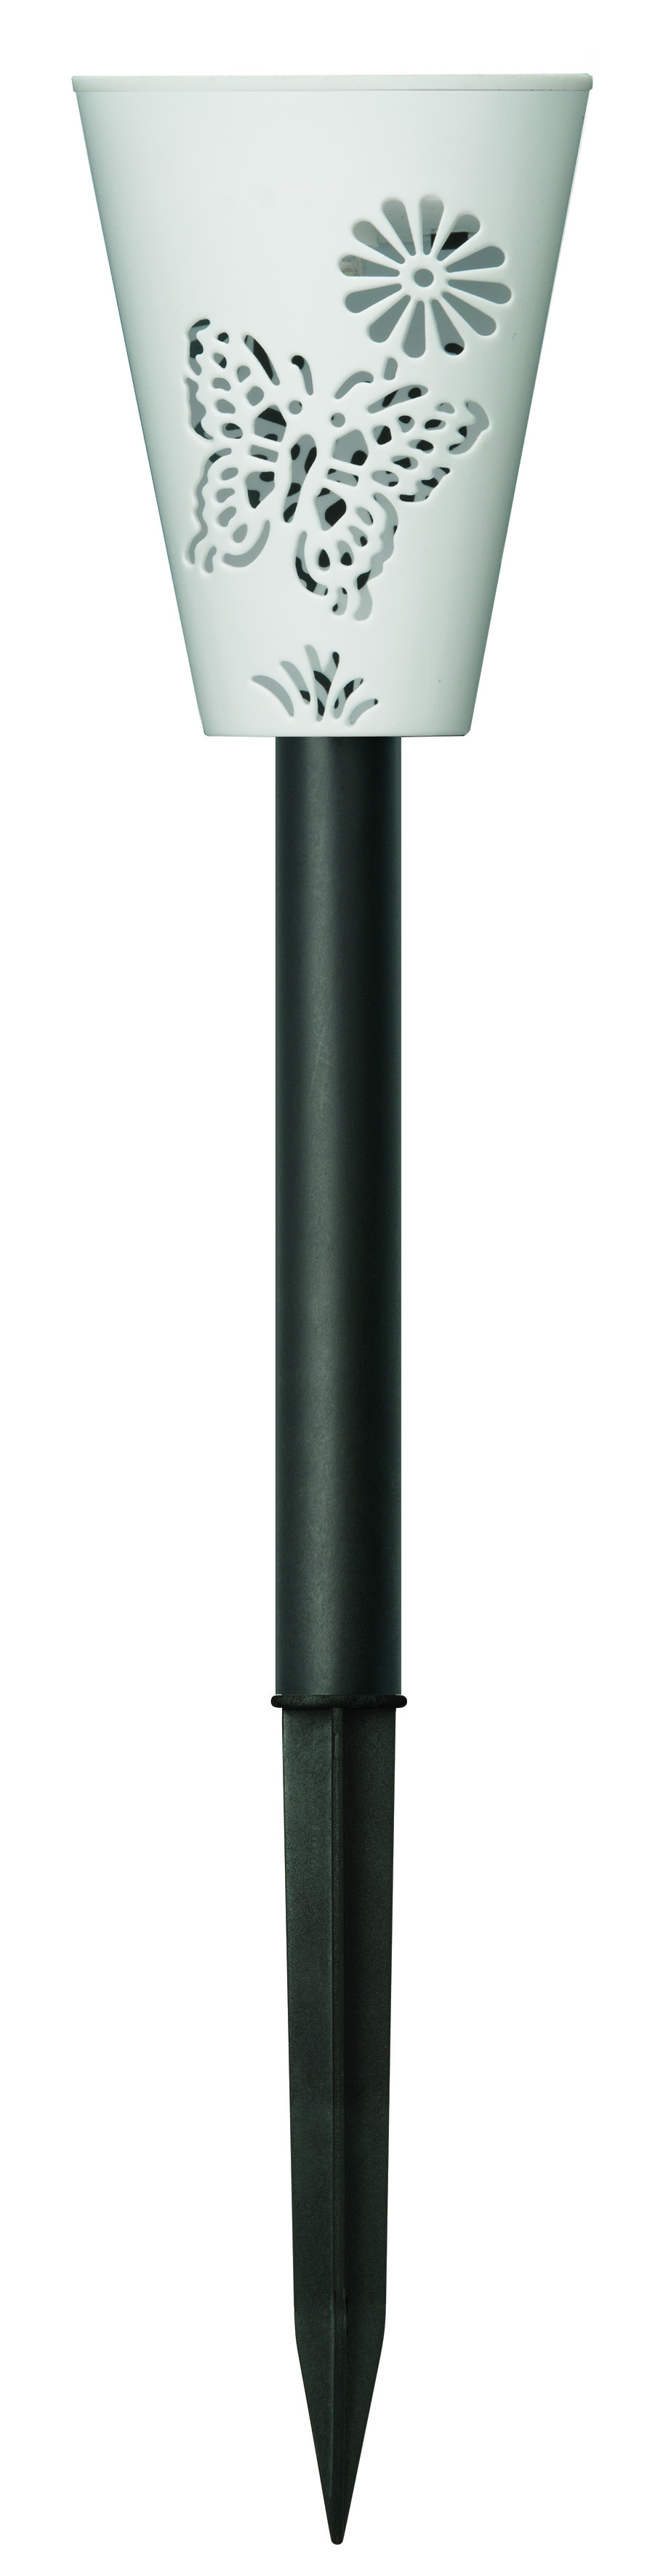 USL-S-015-PT350 Садовый светильник на солнечной батарее Magic lantern. Серия Special